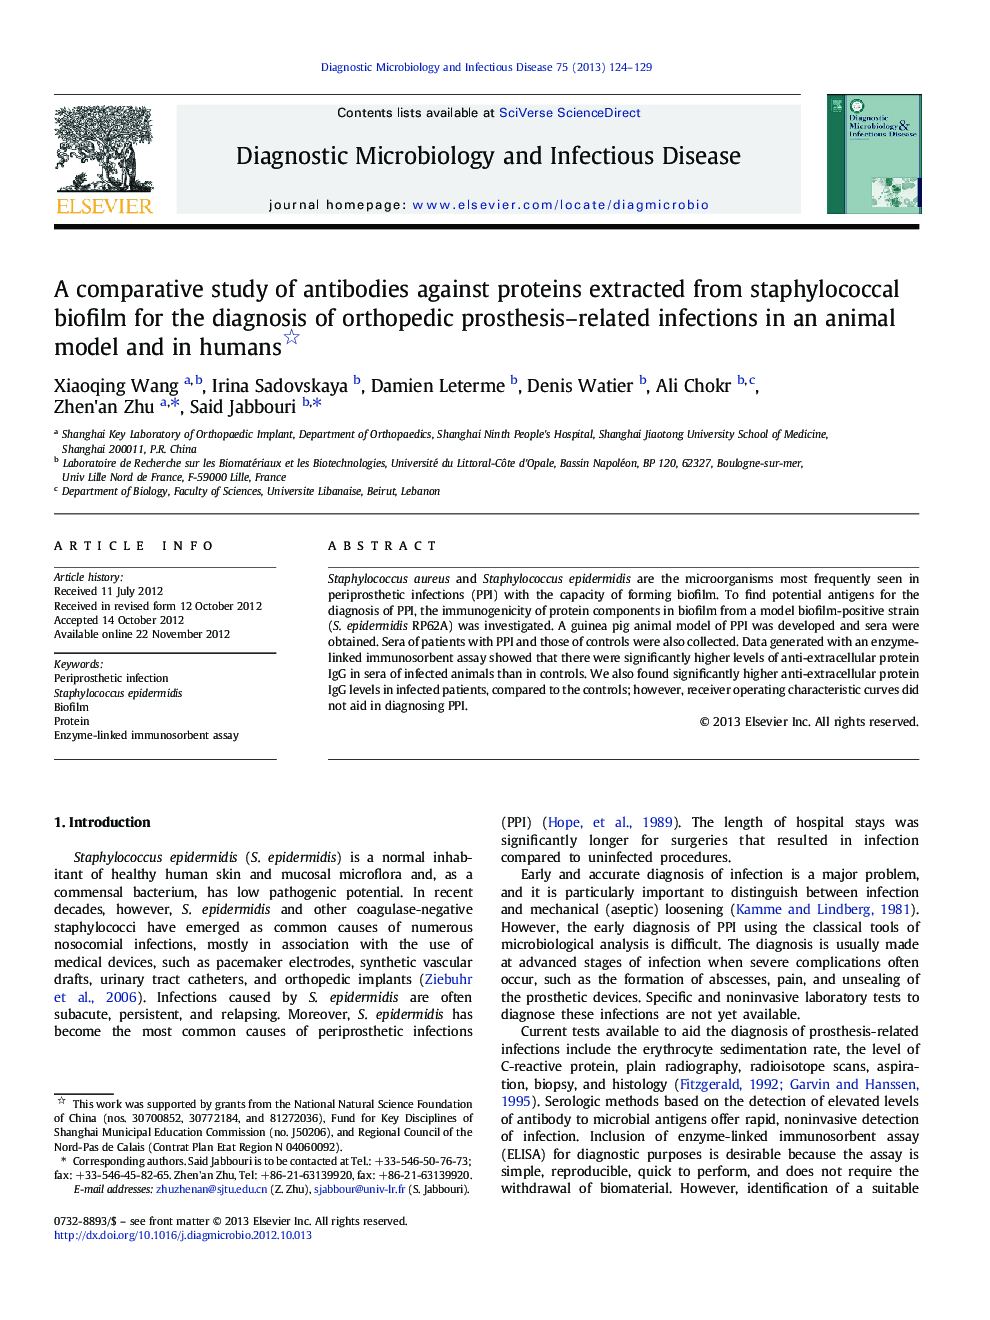 بررسی مقایسه ای آنتی بادی ها در برابر پروتئین های استخراج شده از بیوفیلم استافیلوکوک برای تشخیص عفونت های مرتبط با پروتز ارتوپدی در یک مدل حیوانی و در انسان 